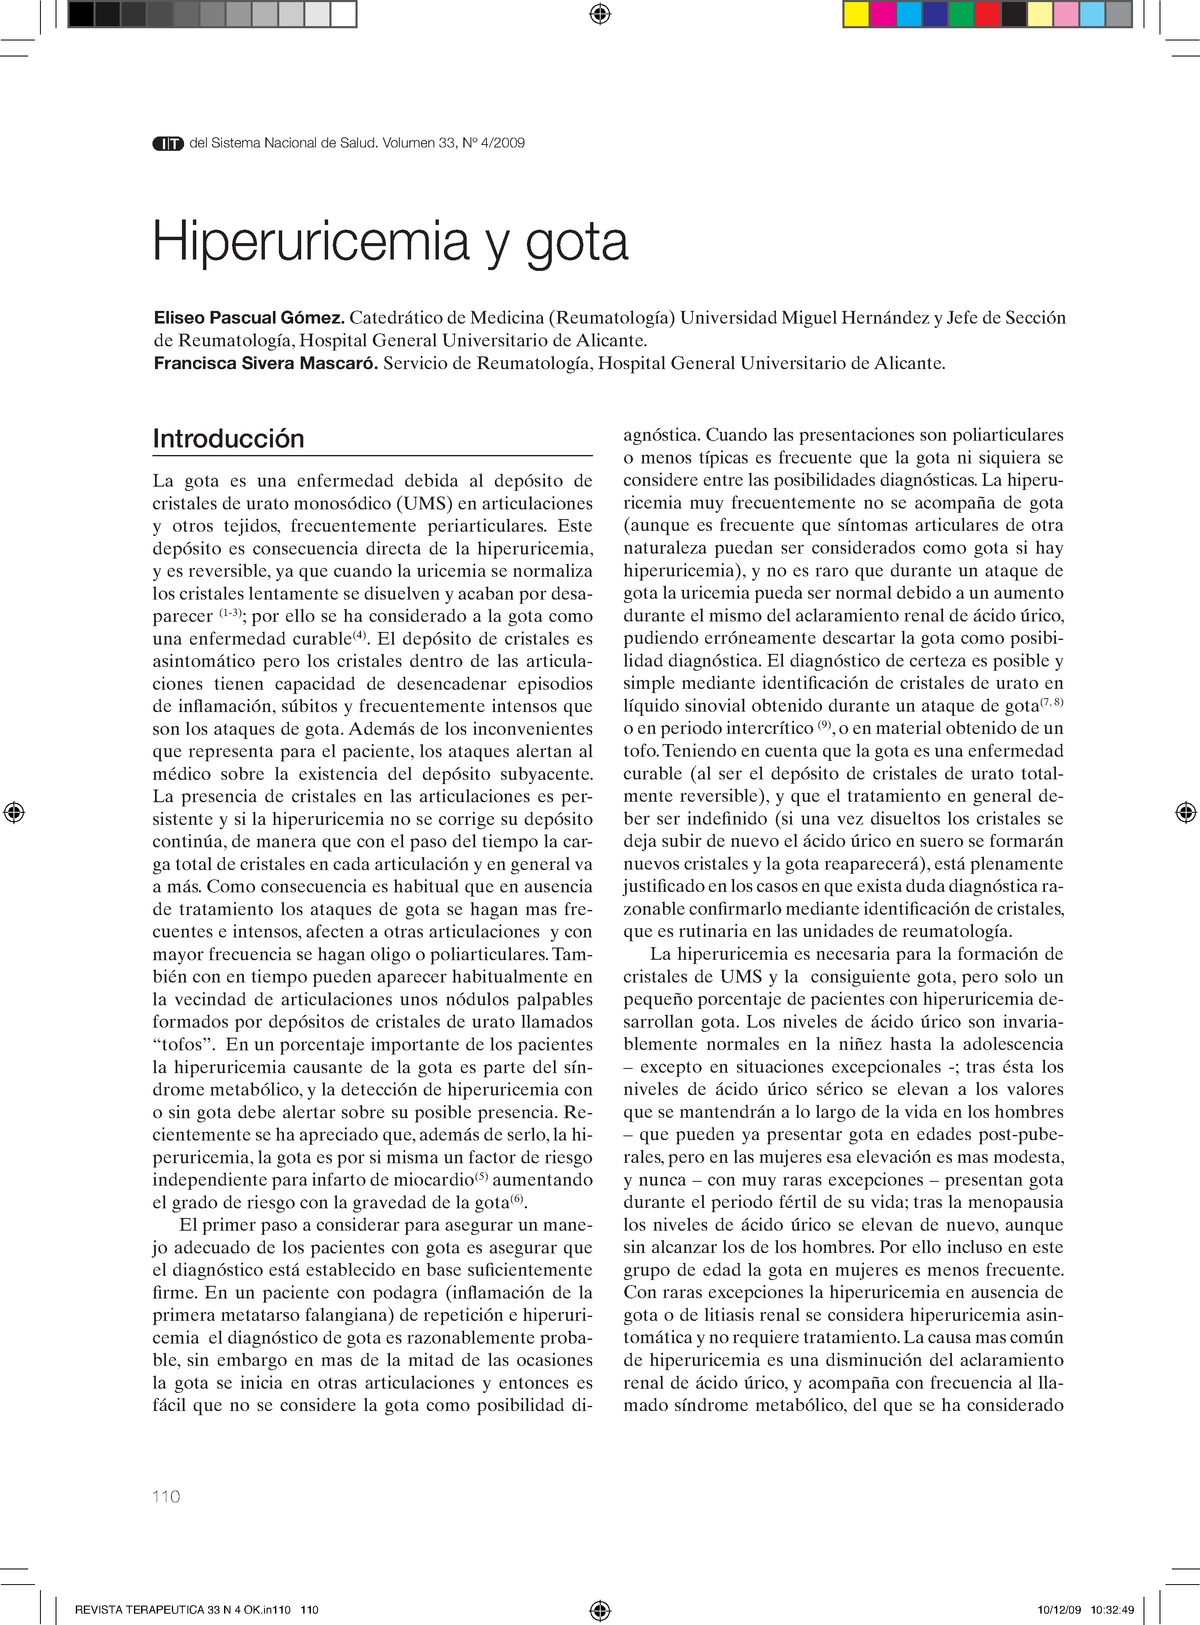 Hiperuricemia y gota - Lecture notes 1-3 - 110 Introducción La gota es ...